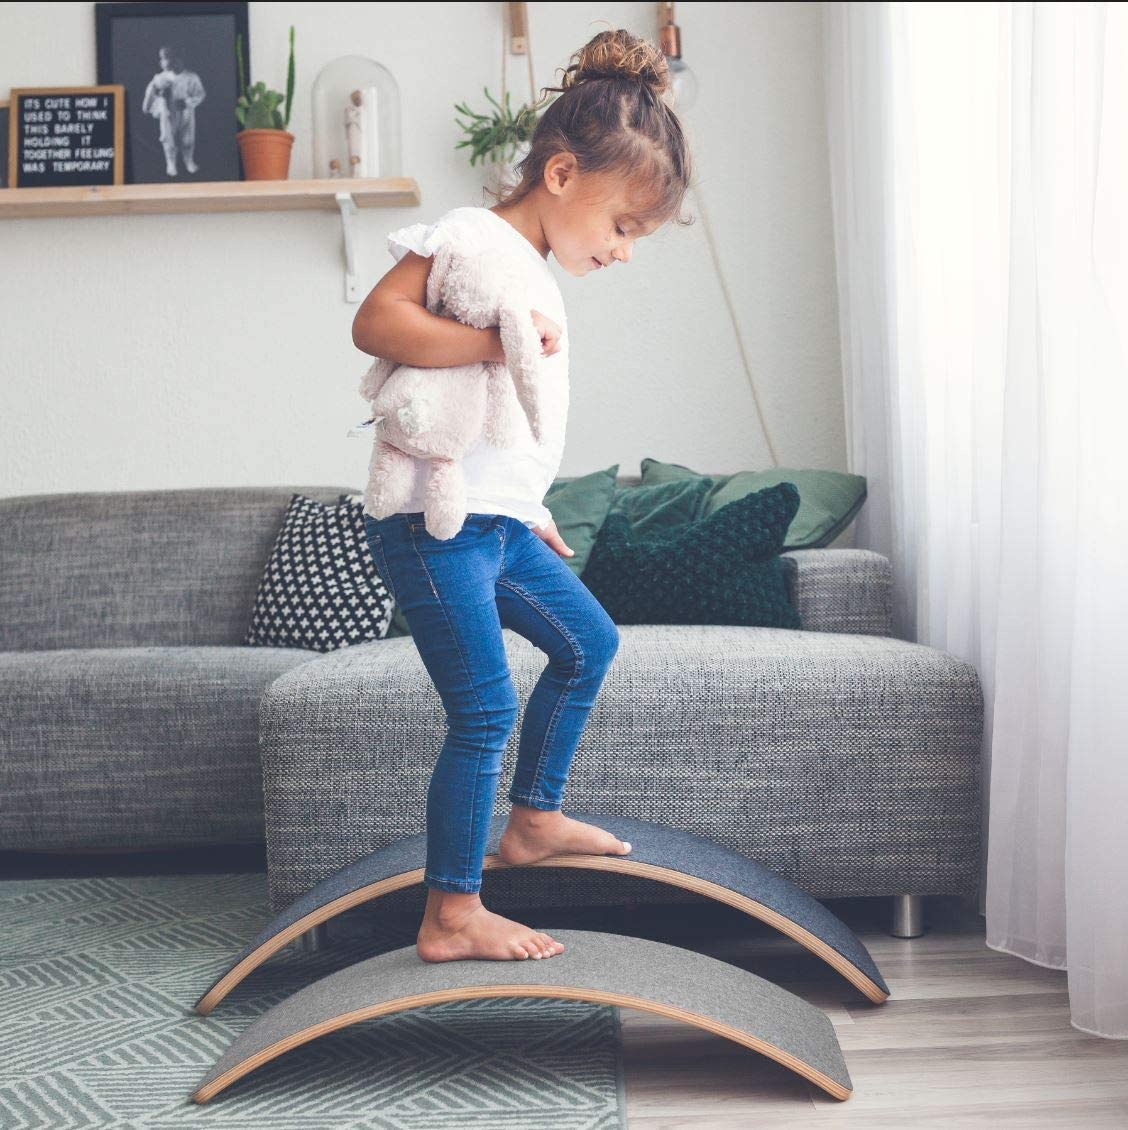 MAMOI® Planche equilibre pour enfant, Balance board, Planches d